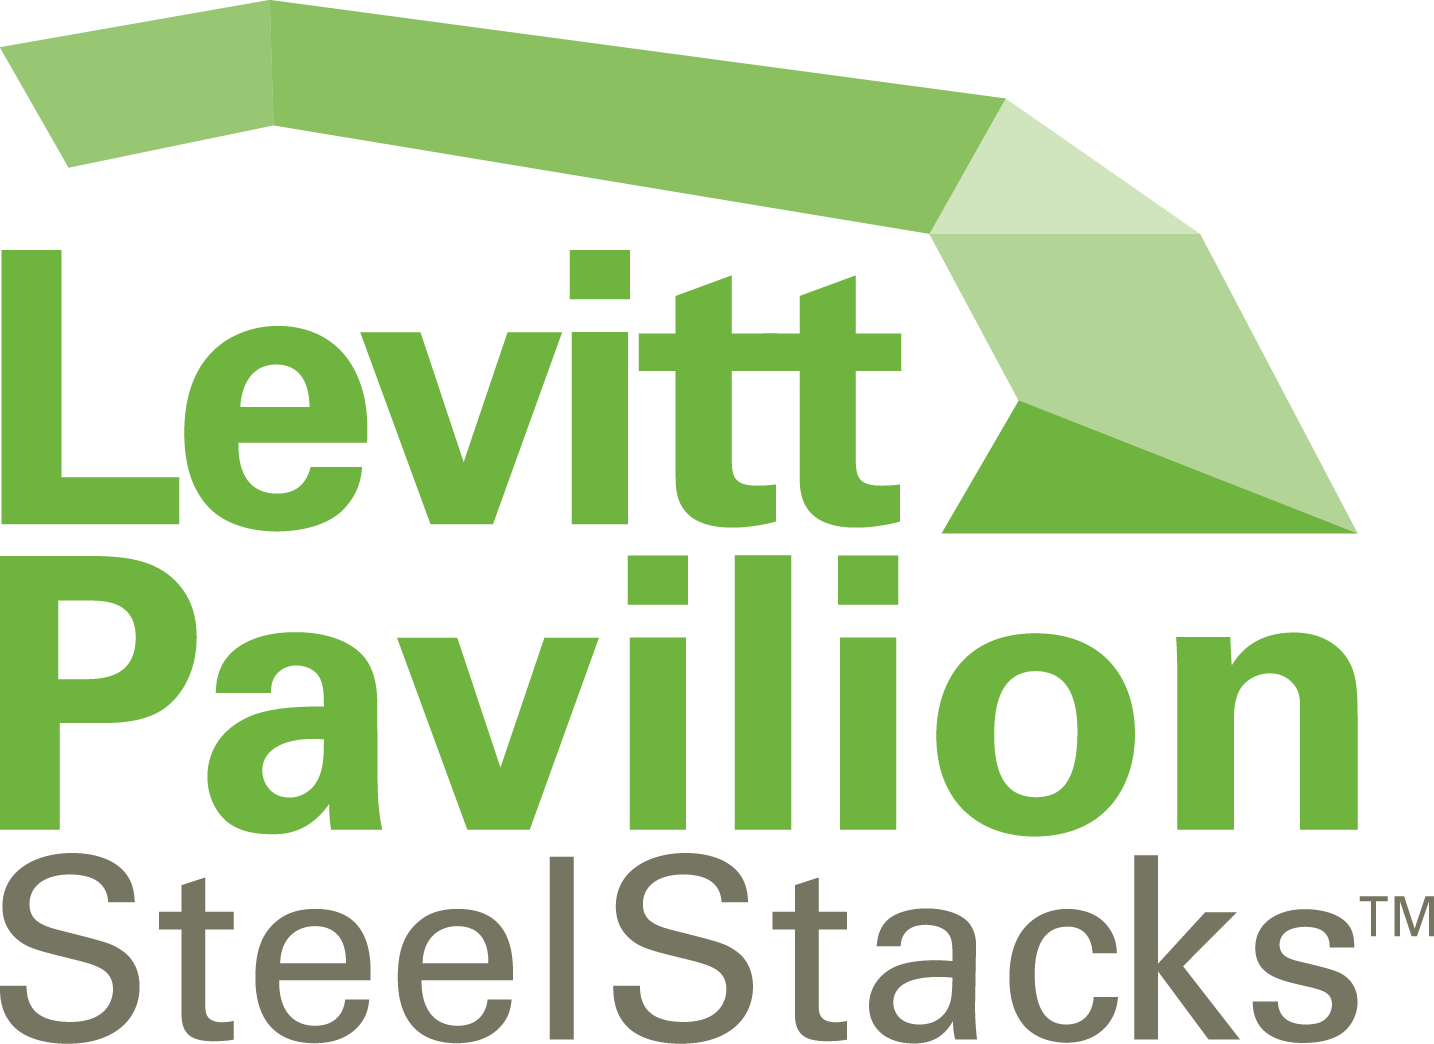 Levitt Pavilion SteelStacks logo